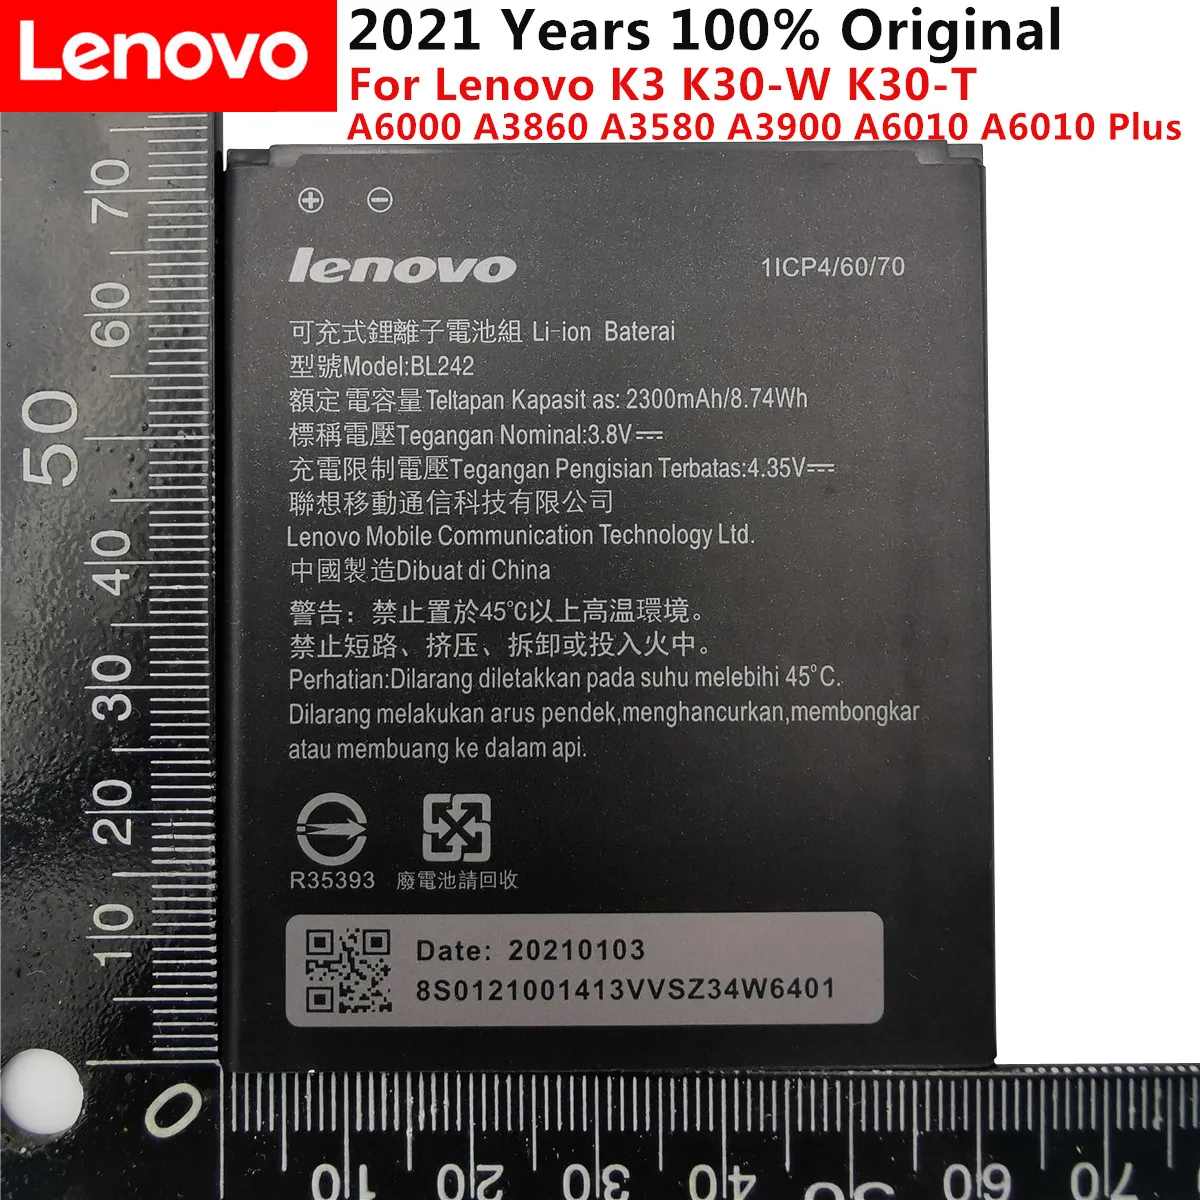 

100% Original BL242 Battery For lenovo K3 K30-W K30-T A6000 A3860 A3580 A3900 A6010 A6010 Plus Batterie Bateria Accumulator